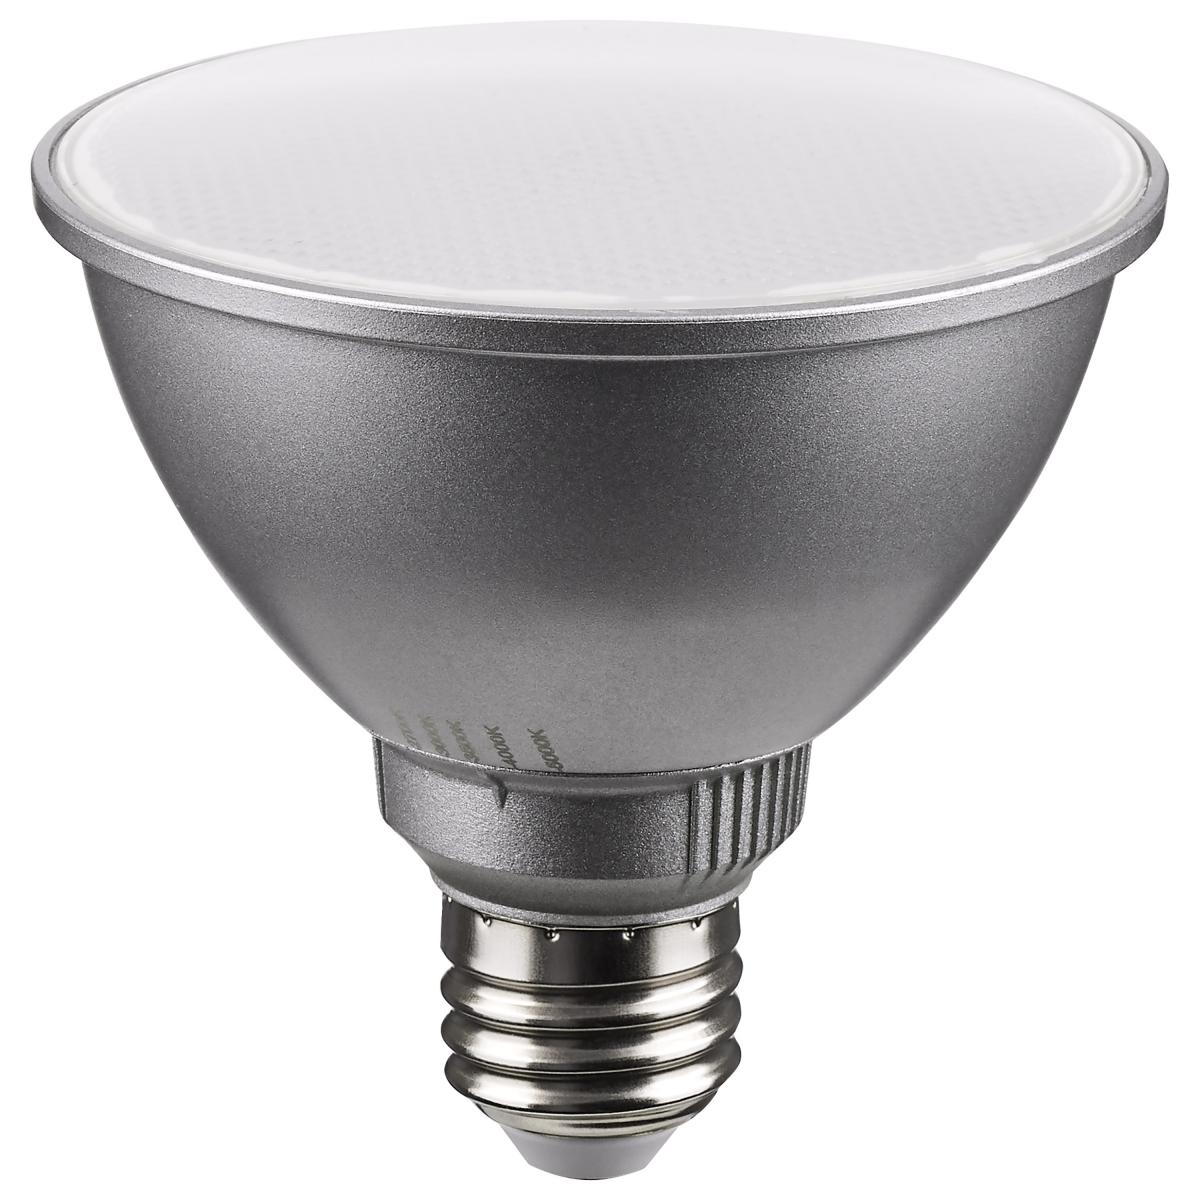 PAR30 Short Neck Reflector LED Bulb, 11 Watt, 1000 Lumens, Selectable CCT 2700K to 5000K, E26 Medium Base, 60 Deg. Wide Flood - Bees Lighting